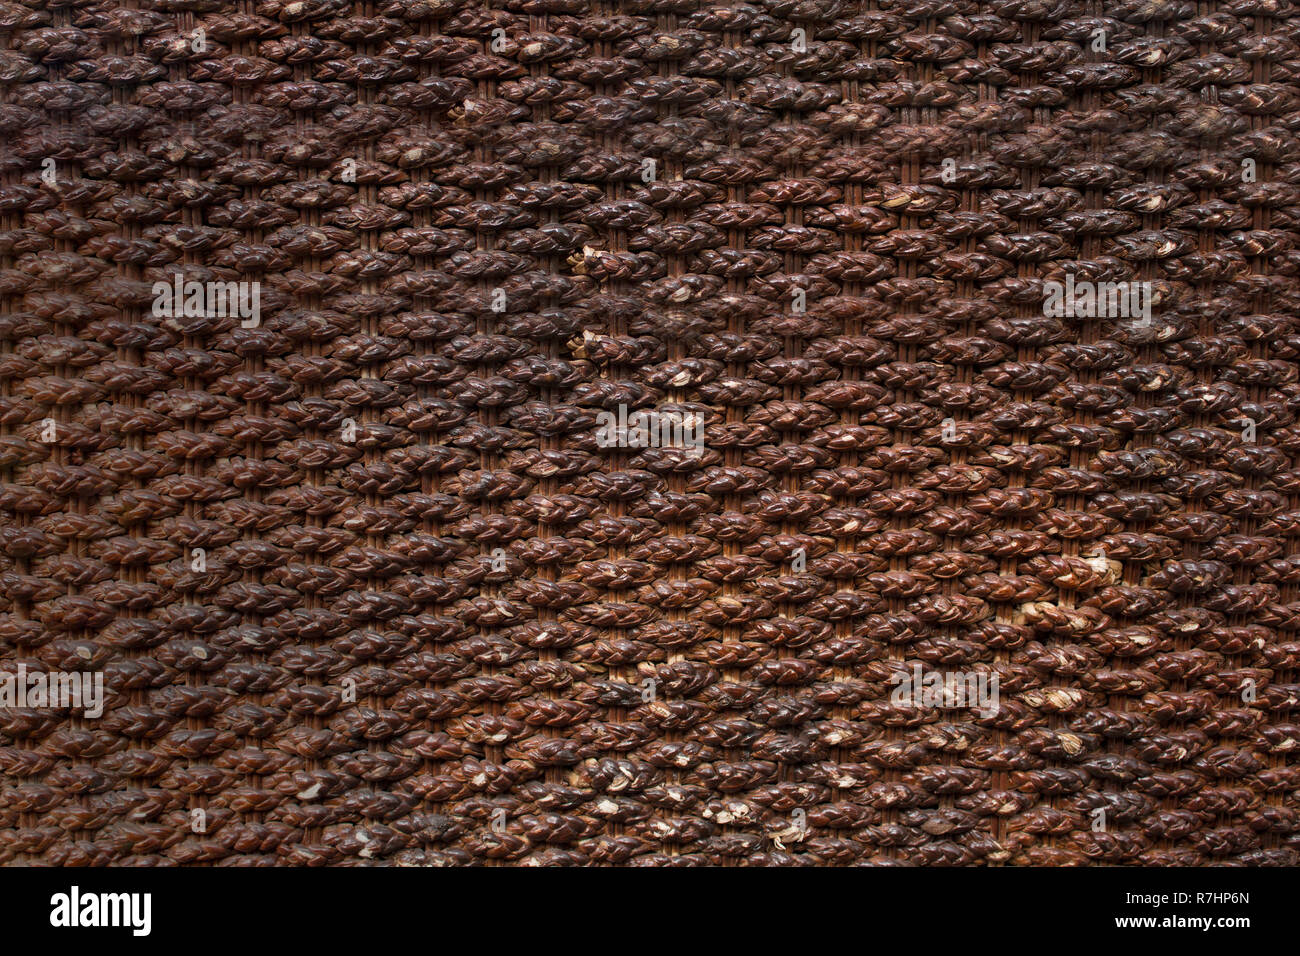 Rattan surface texture. Stock Photo